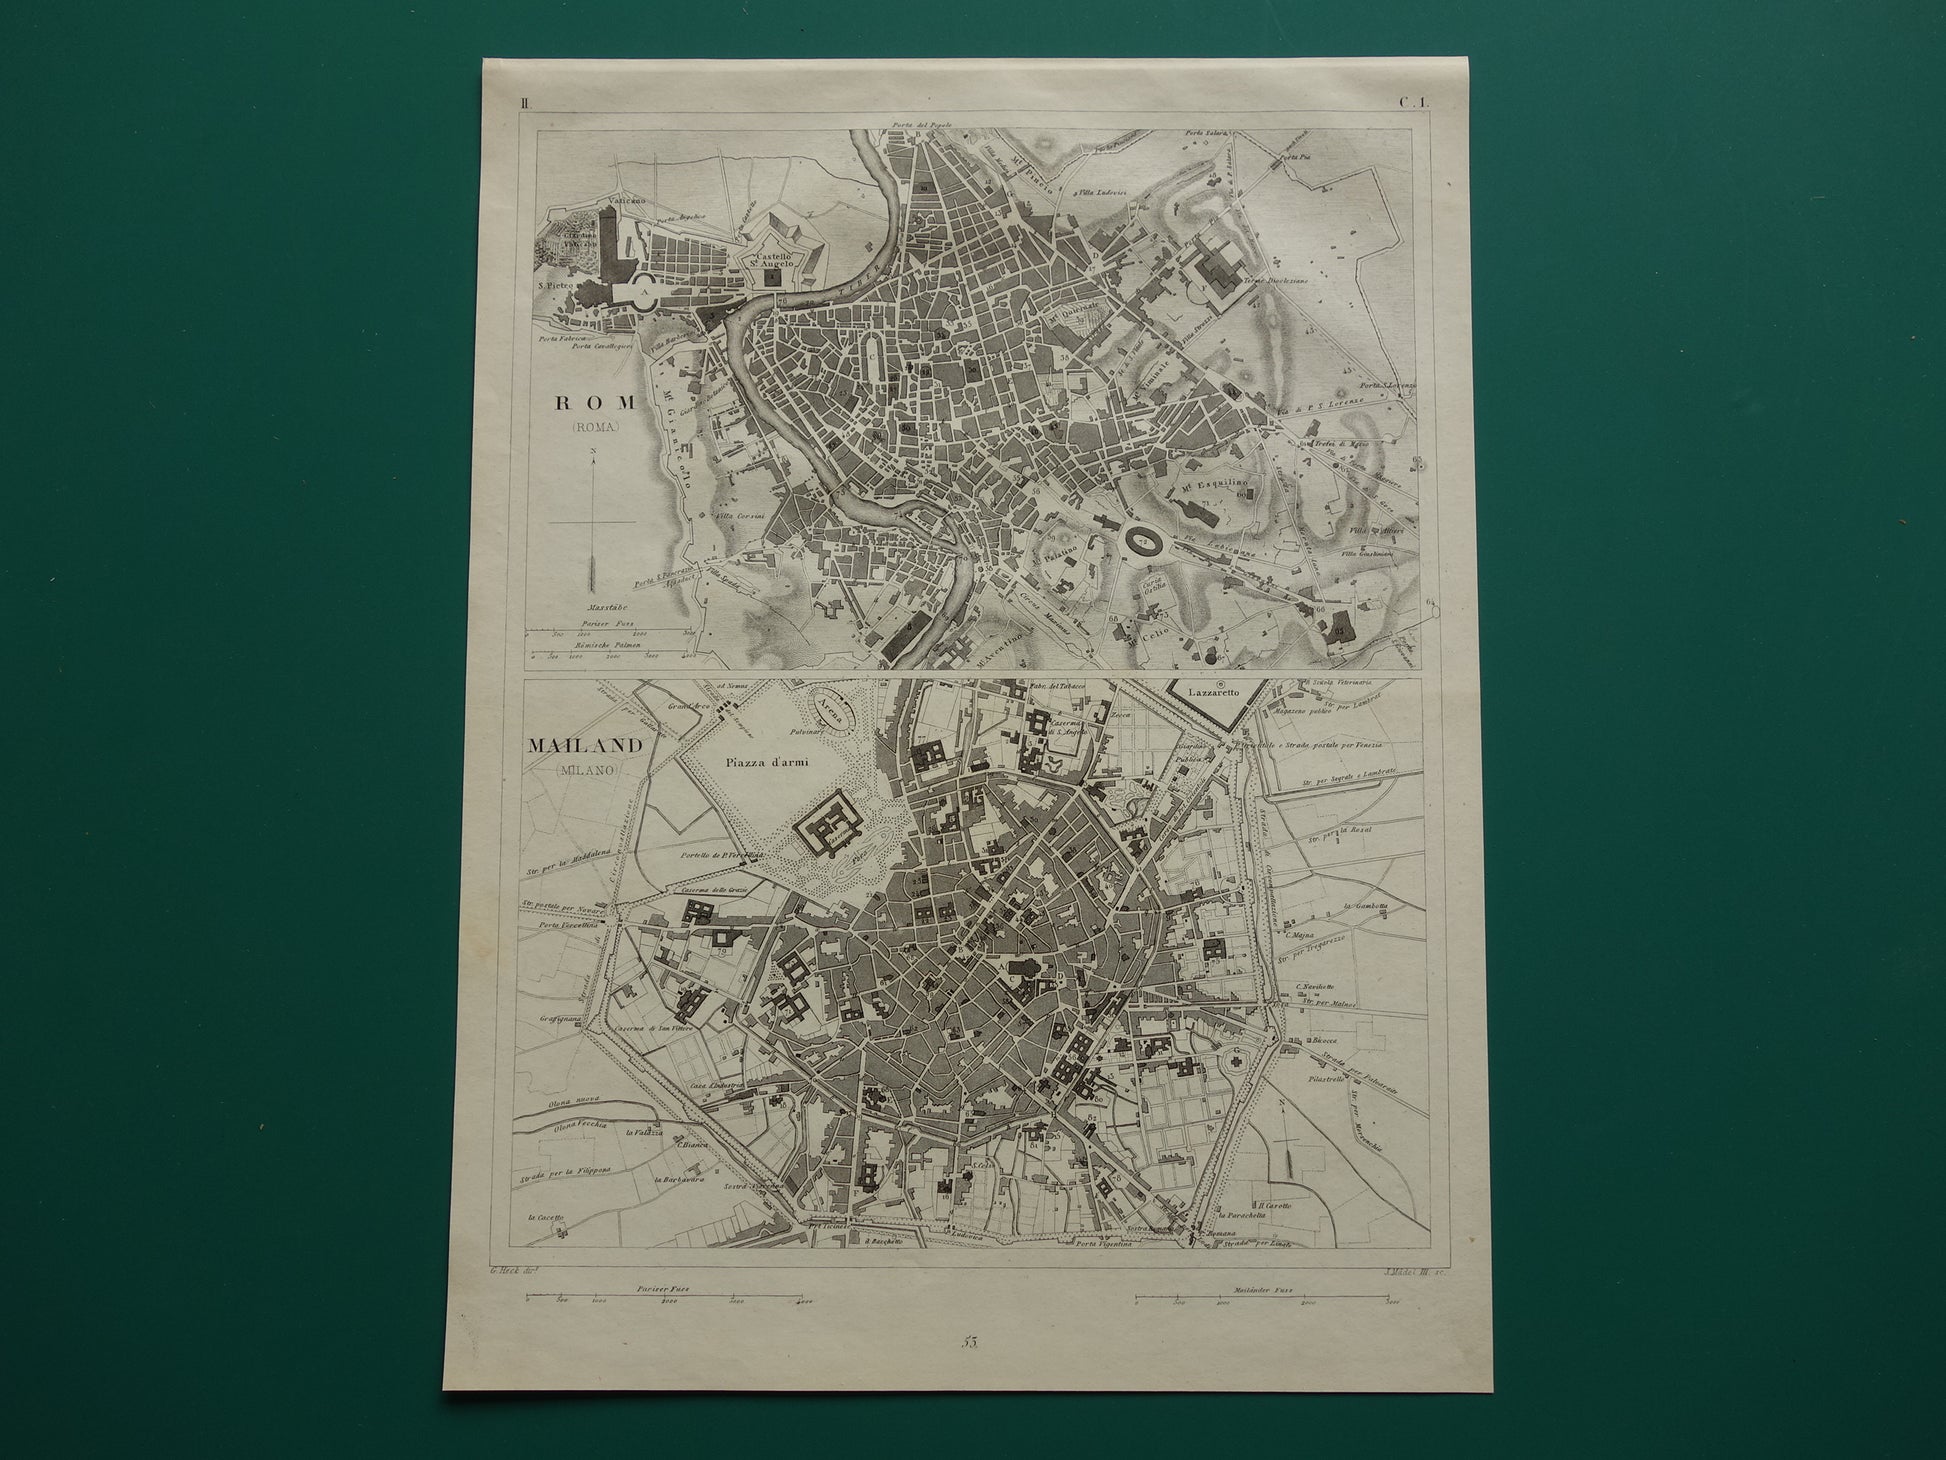 Rome en Milaan antieke plattegrond 170+ jaar oude kaart van Rome Milaan Italië uit 1849 - originele vintage historische kaarten